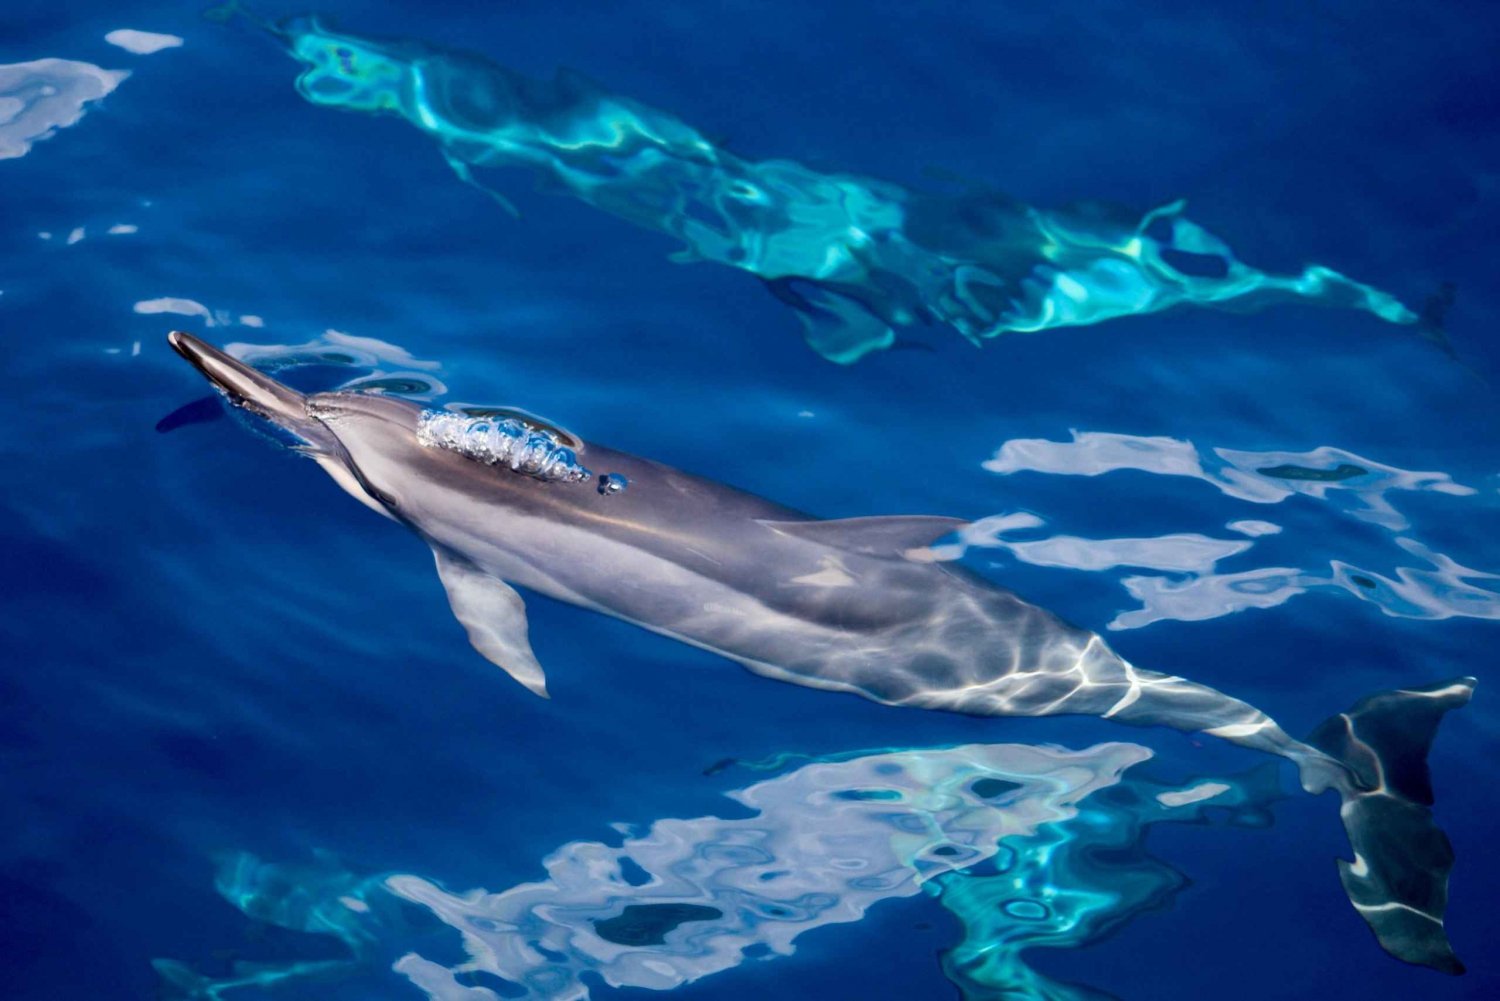 Södra Maui: Snorkling och delfinsafari på Lanai från Maalaea